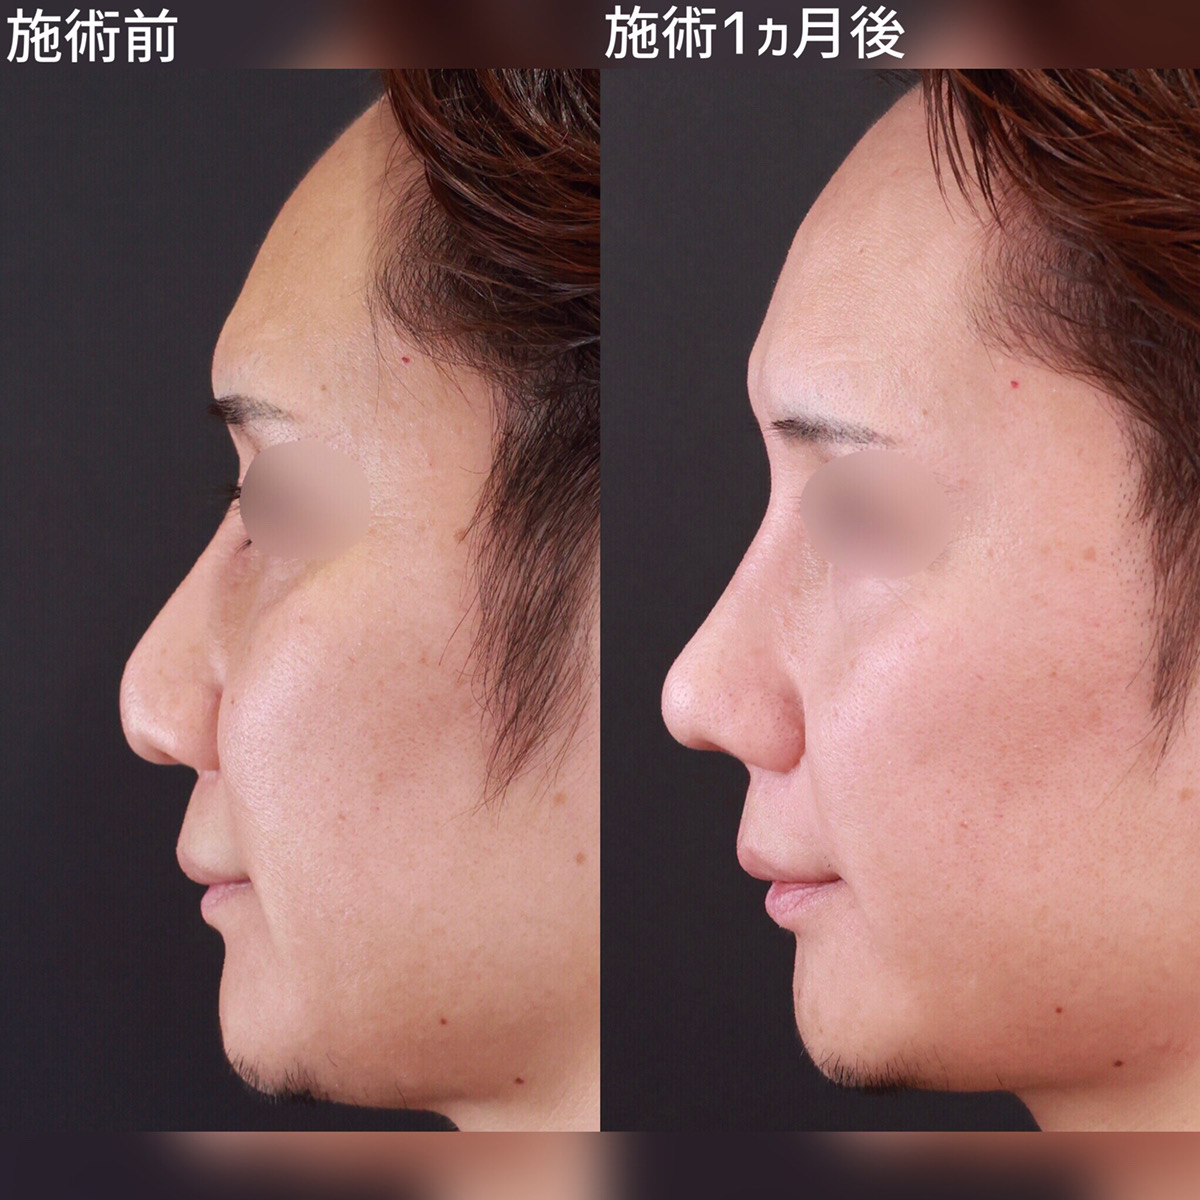 韩国赫拉做隆鼻怎么样?李丙玟的3D鼻综合技术优势是鼻形自然损伤小_最热整形行业新闻话题 - 美佳网